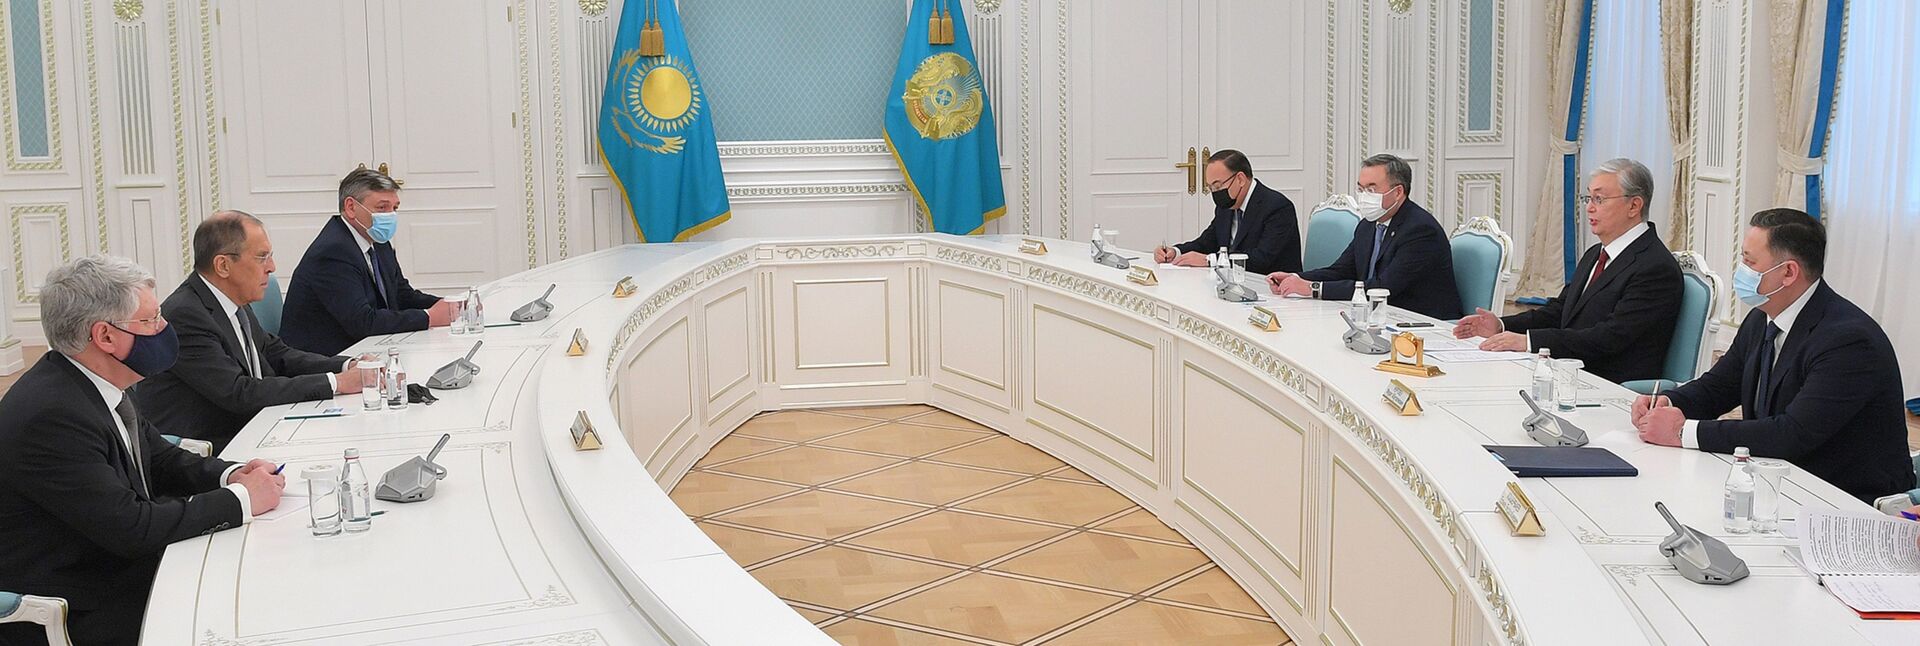 Токаев встретился с министром иностранных дел России Сергеем Лавровым - Sputnik Казахстан, 1920, 08.04.2021